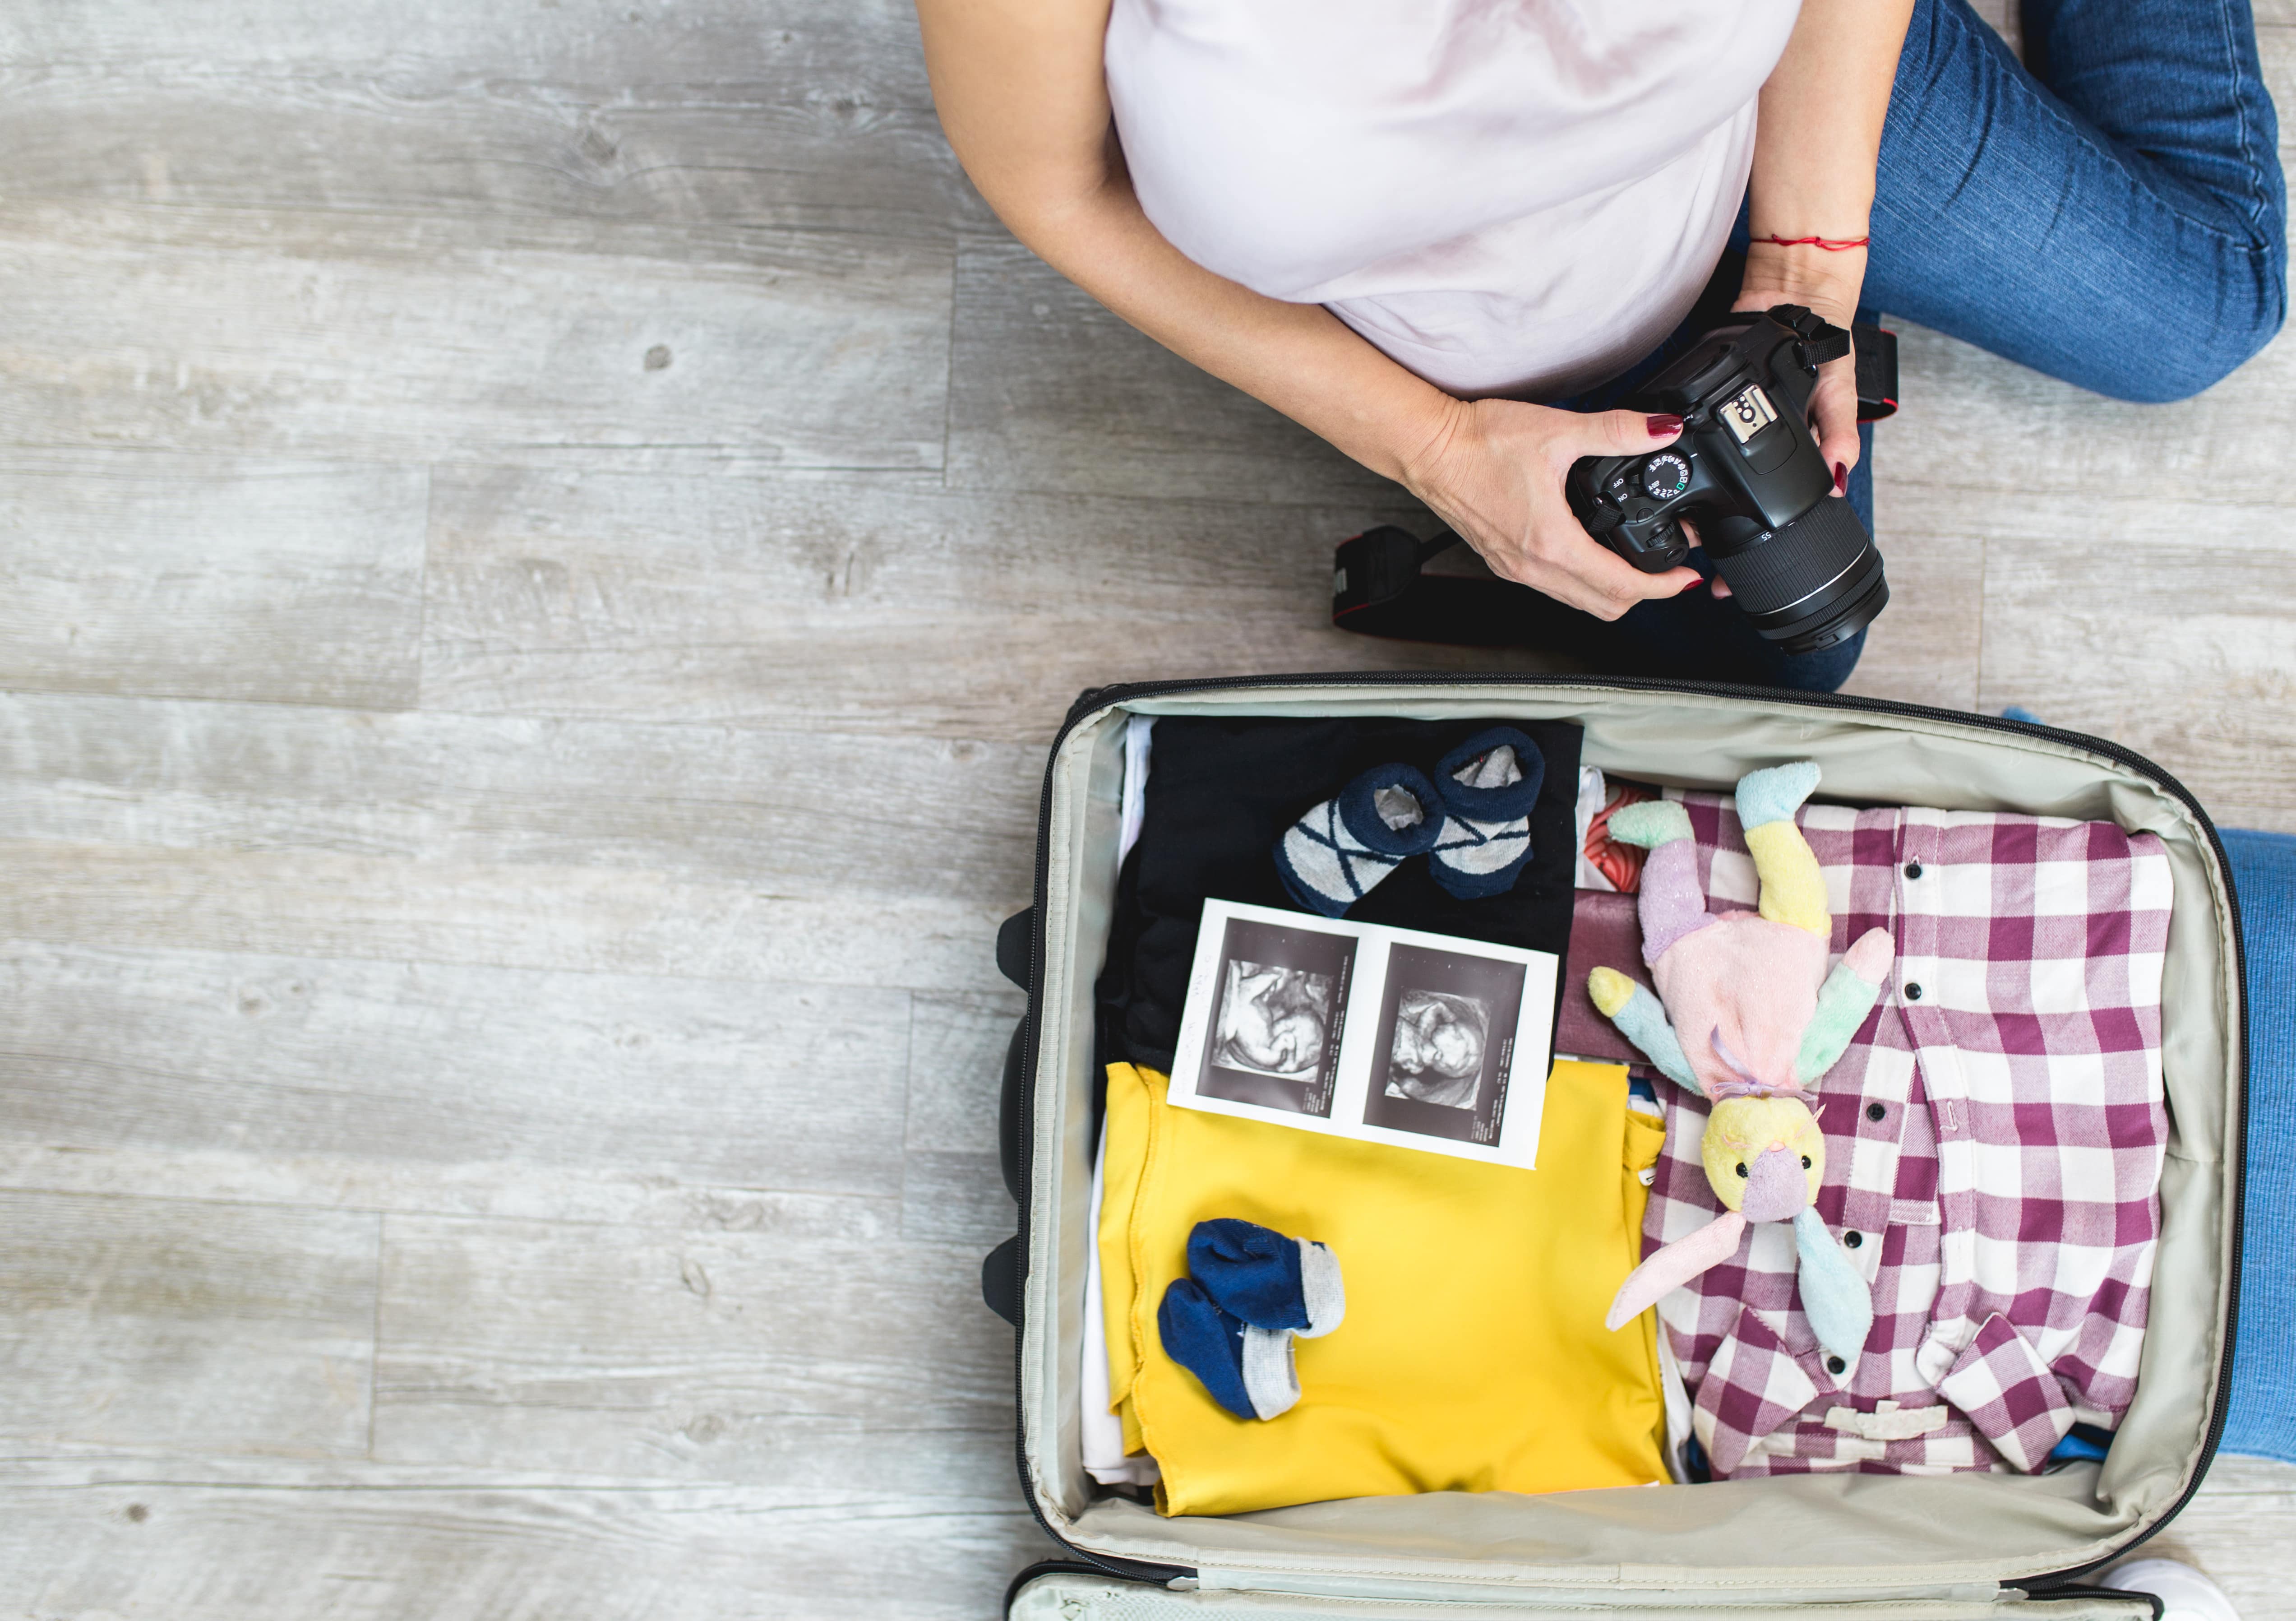 Femme enceinte à côté d'ouvrir le sac du voyageur avec échographie de son bébé, chaussettes de bébé, vêtements et appareil photo. Concept de voyage et de vacances.